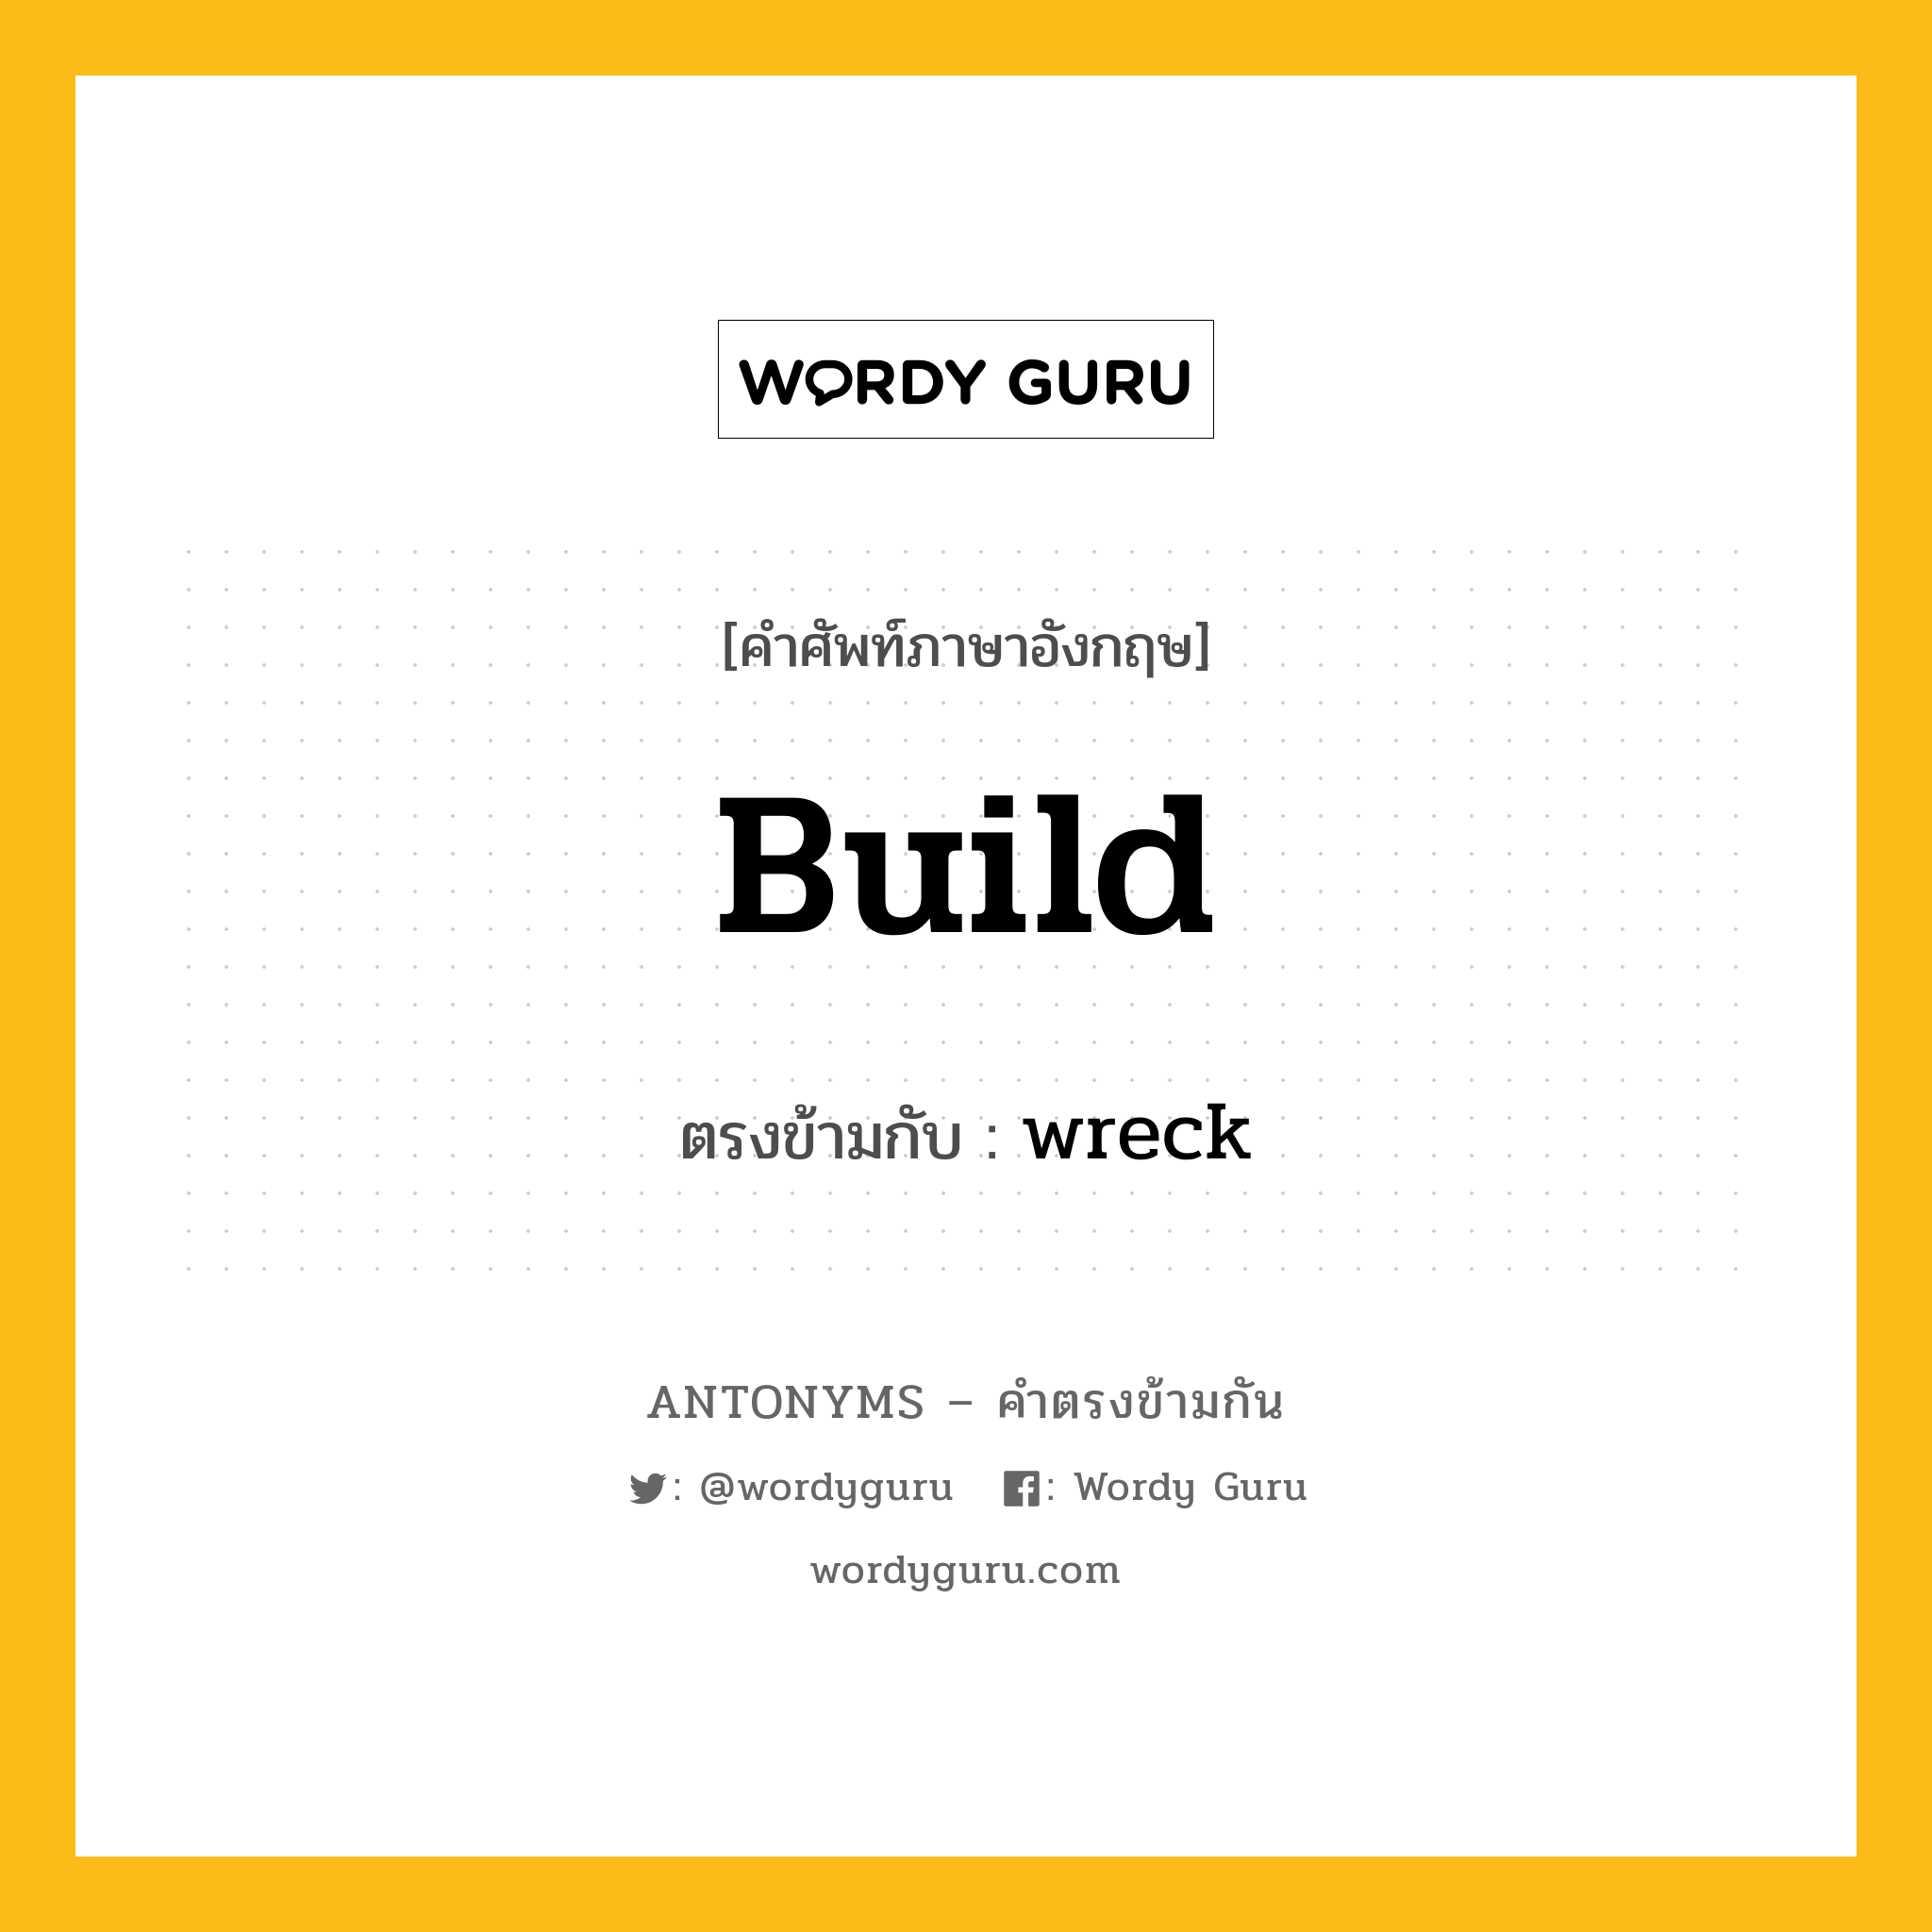 build เป็นคำตรงข้ามกับคำไหนบ้าง?, คำศัพท์ภาษาอังกฤษ build ตรงข้ามกับ wreck หมวด wreck